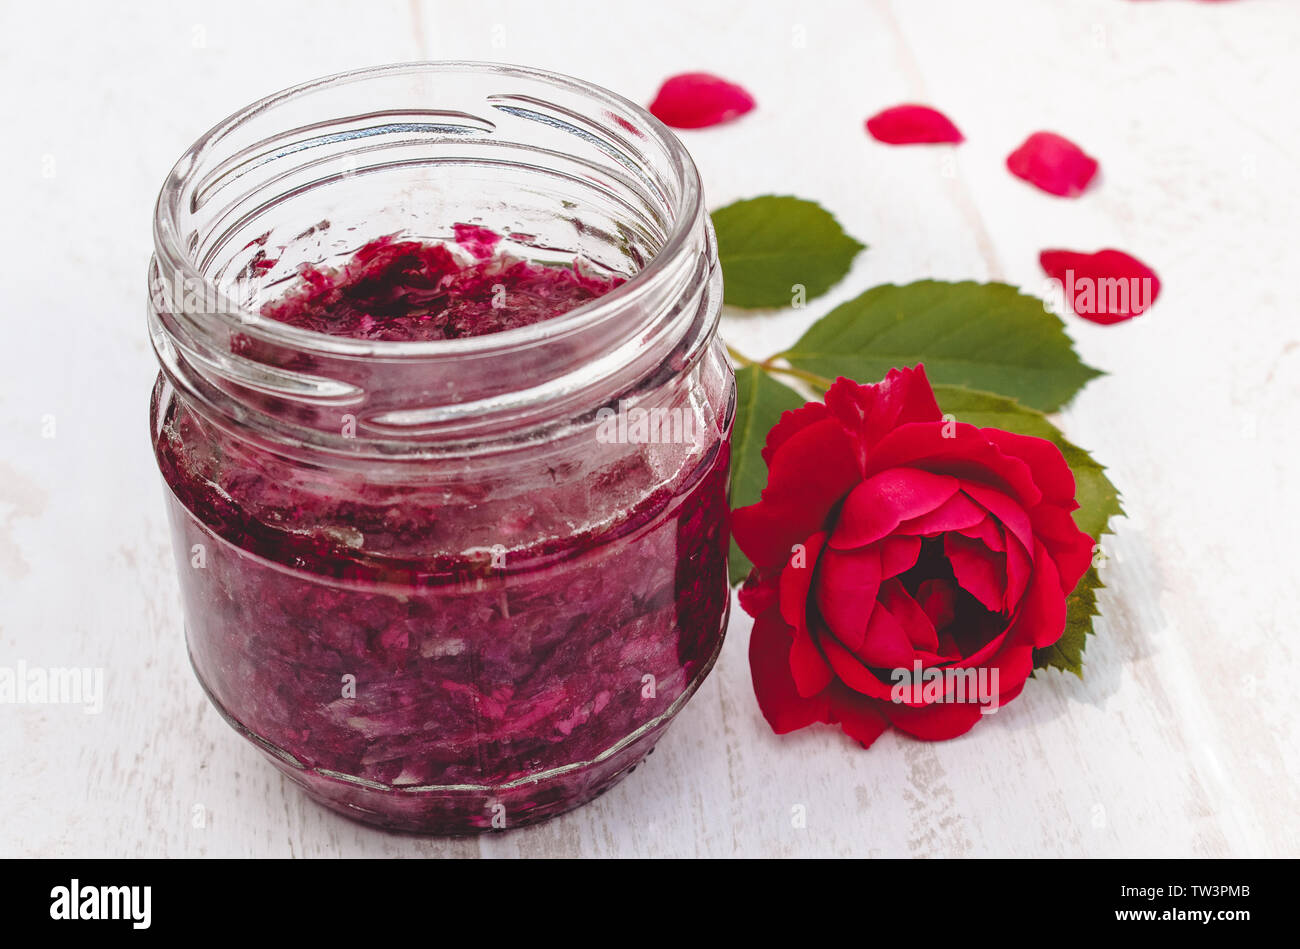 Confiture de pétales de rose dans un bocal de verre sur un fond clair. Confiture de fleurs. Alimentation saine. Copy space Banque D'Images